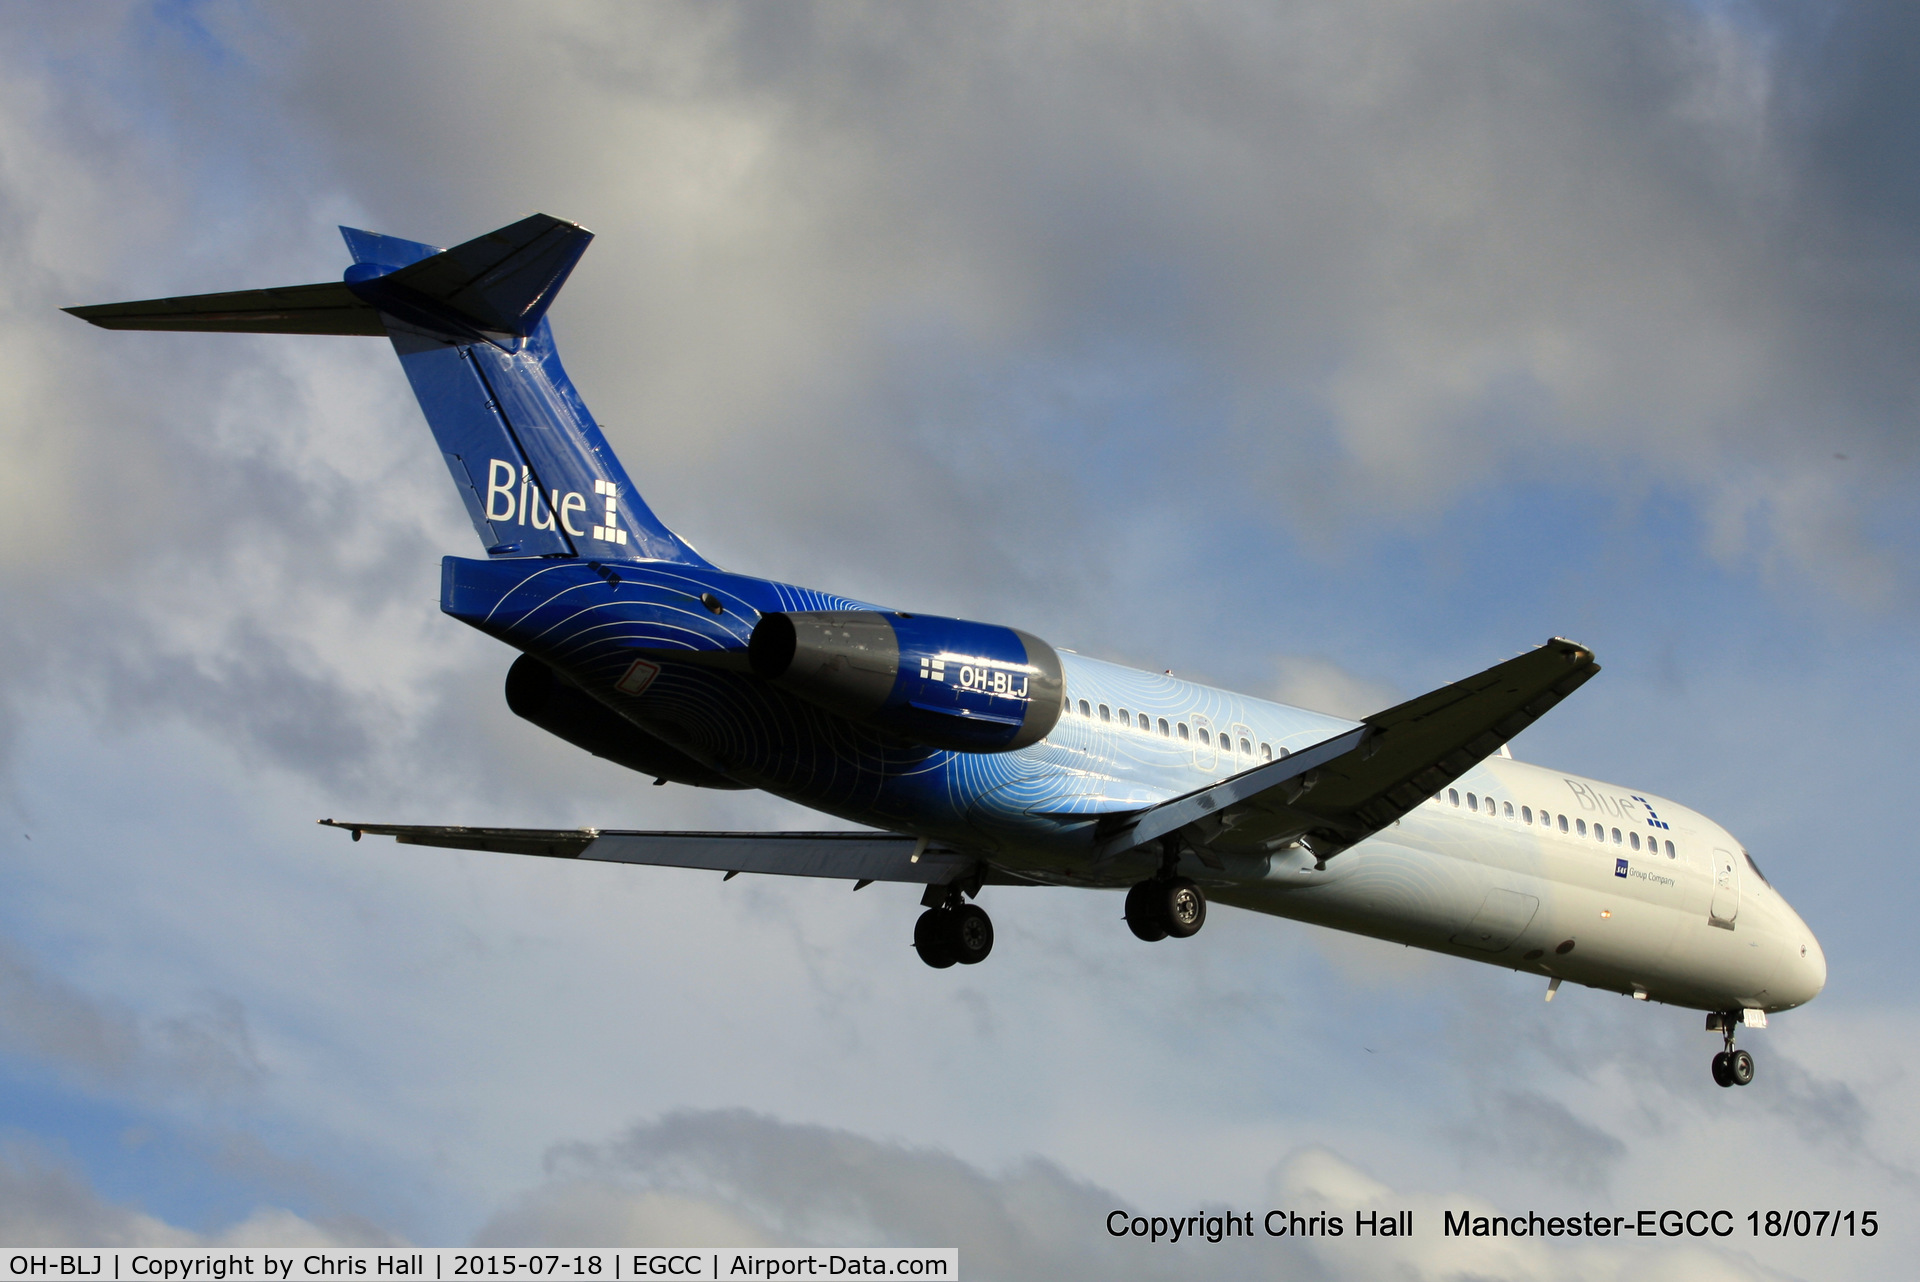 OH-BLJ, 2000 Boeing 717-23S C/N 55065, Blue1